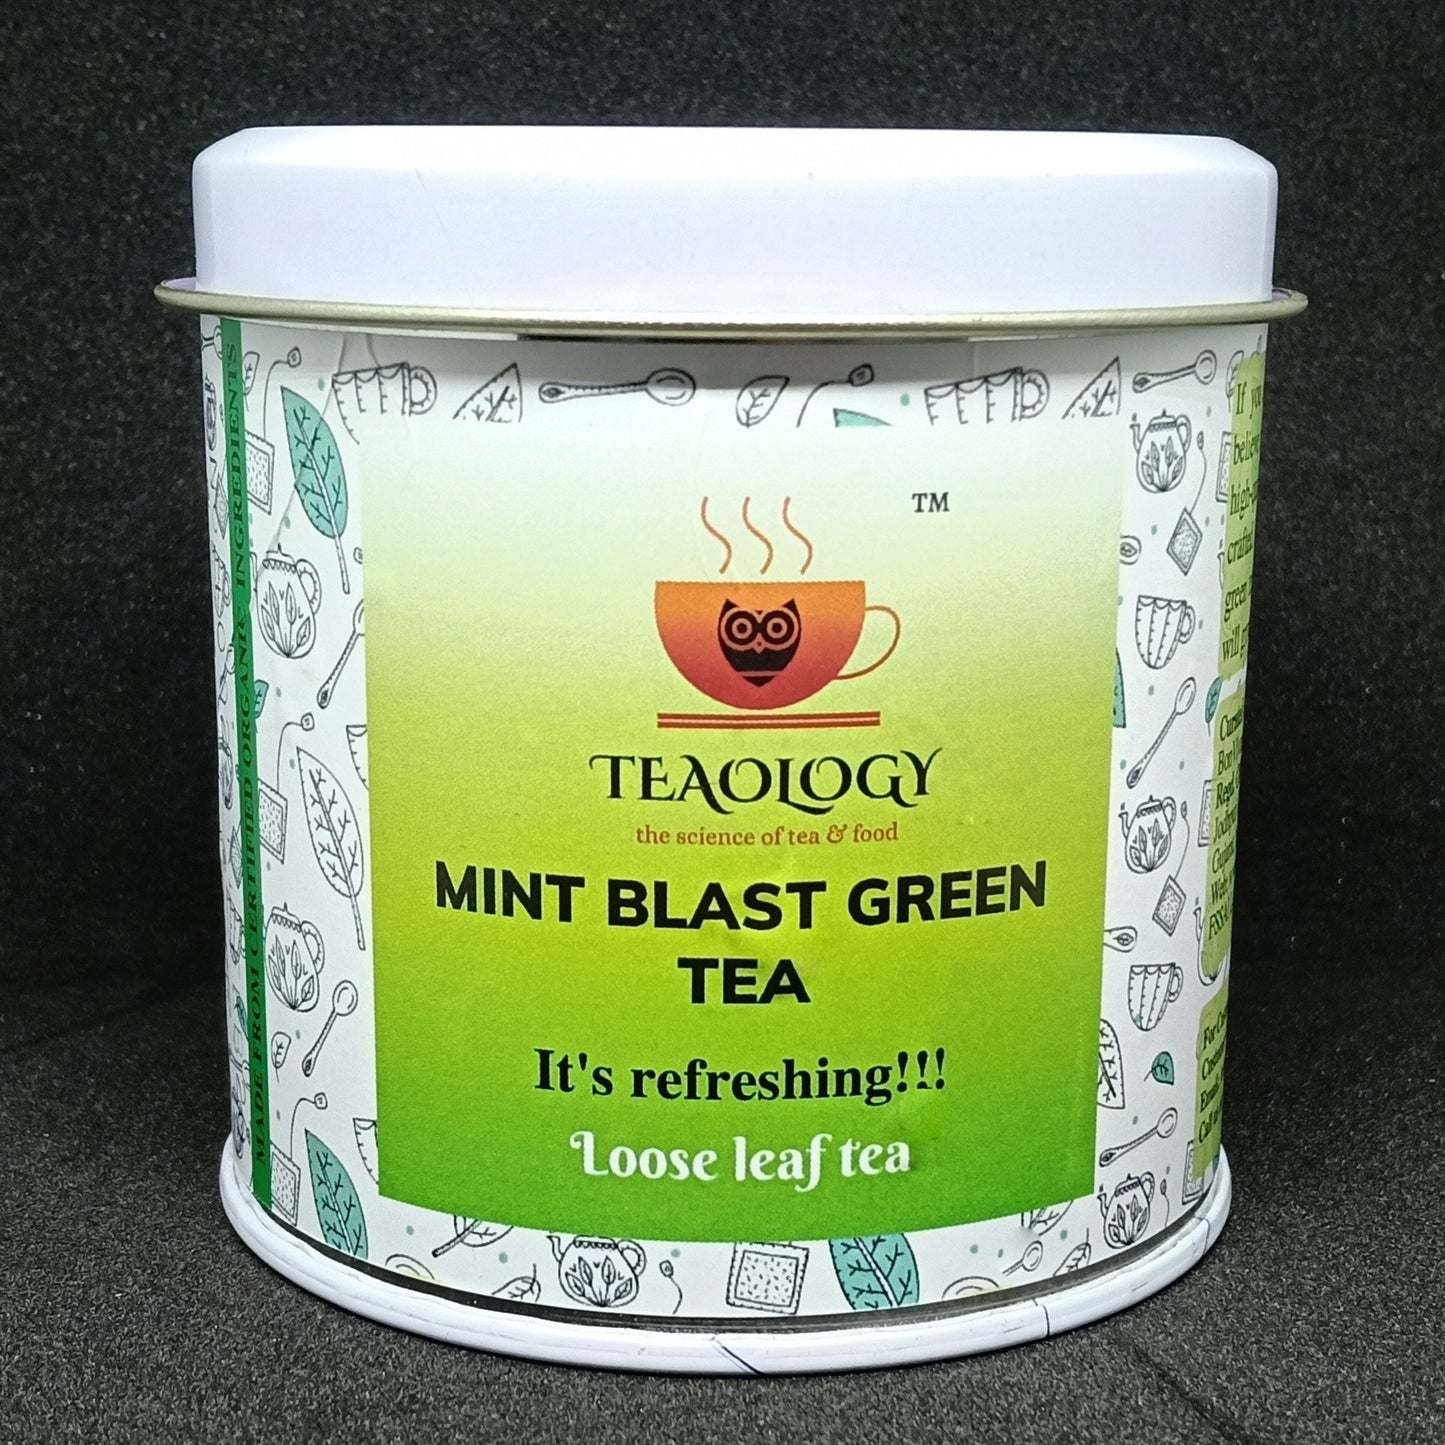 Mint Green Blast Tea (Loose leaf tea)